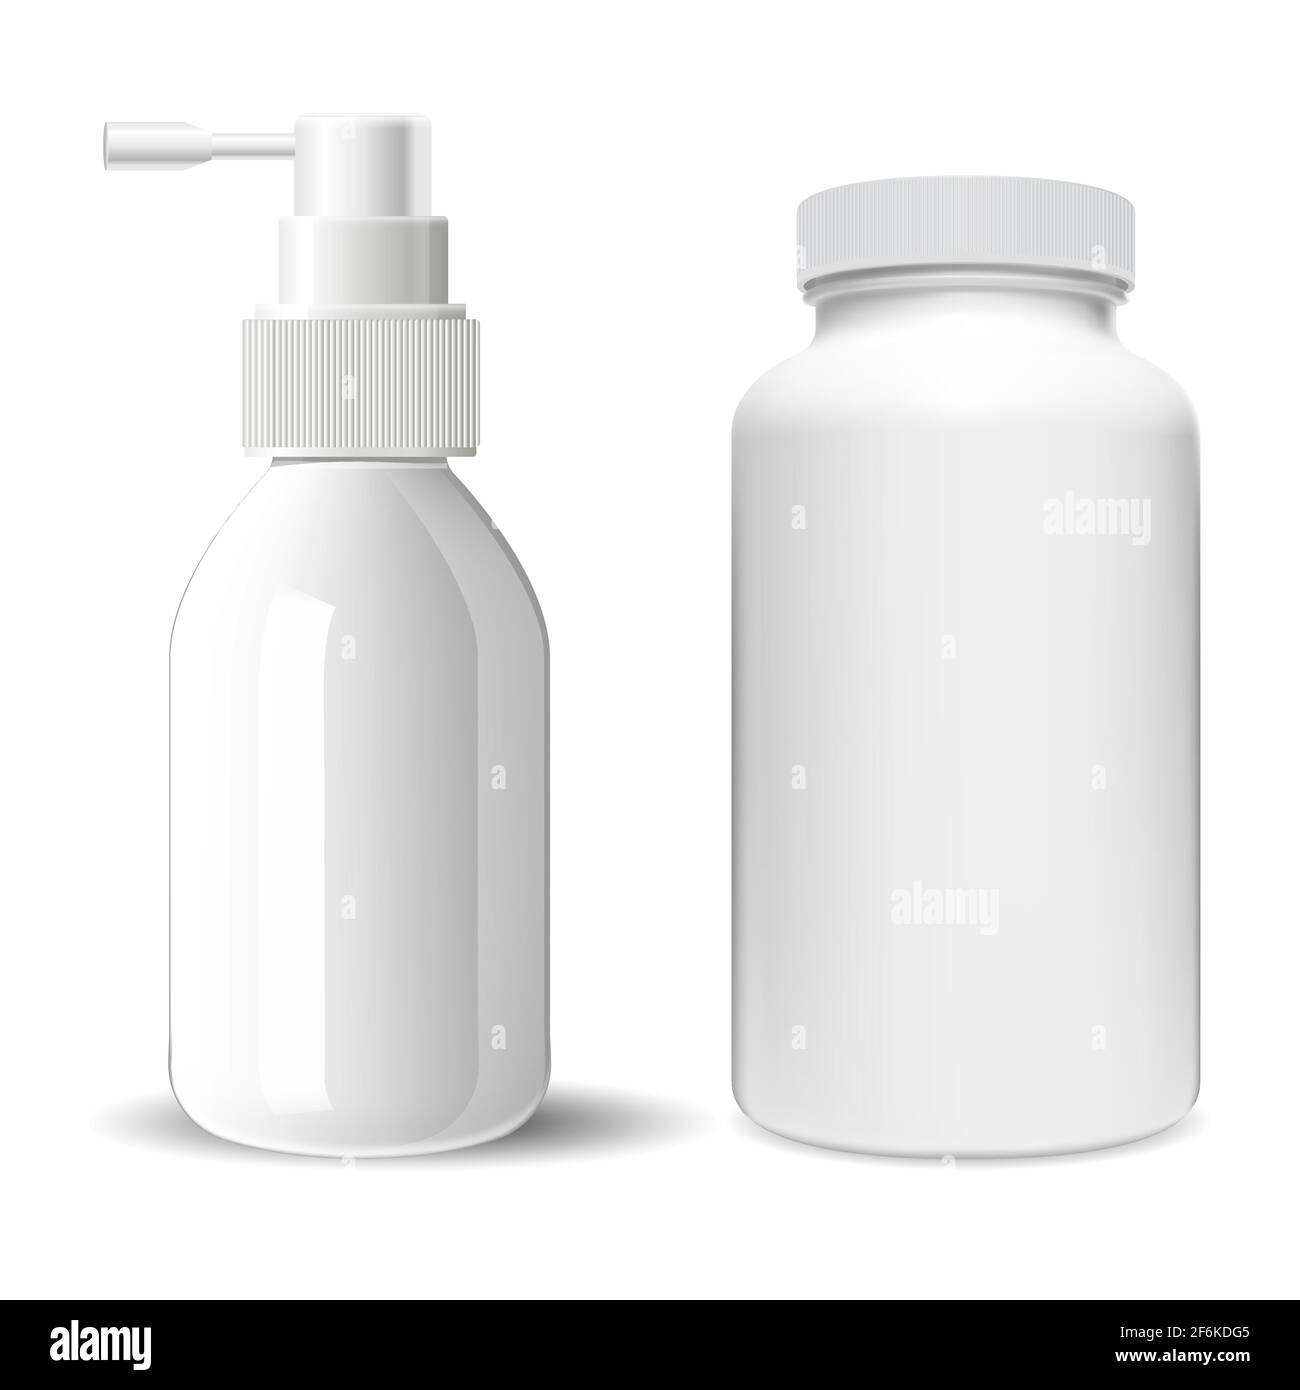 Flasche mit Supplement pill. Hals Spray medizinische Flasche. Abbildung des Behälters der Spritze. Pharmazeutische Tablette Glas, antibiotische Kapsel Produkt. Nase aller Stock Vektor